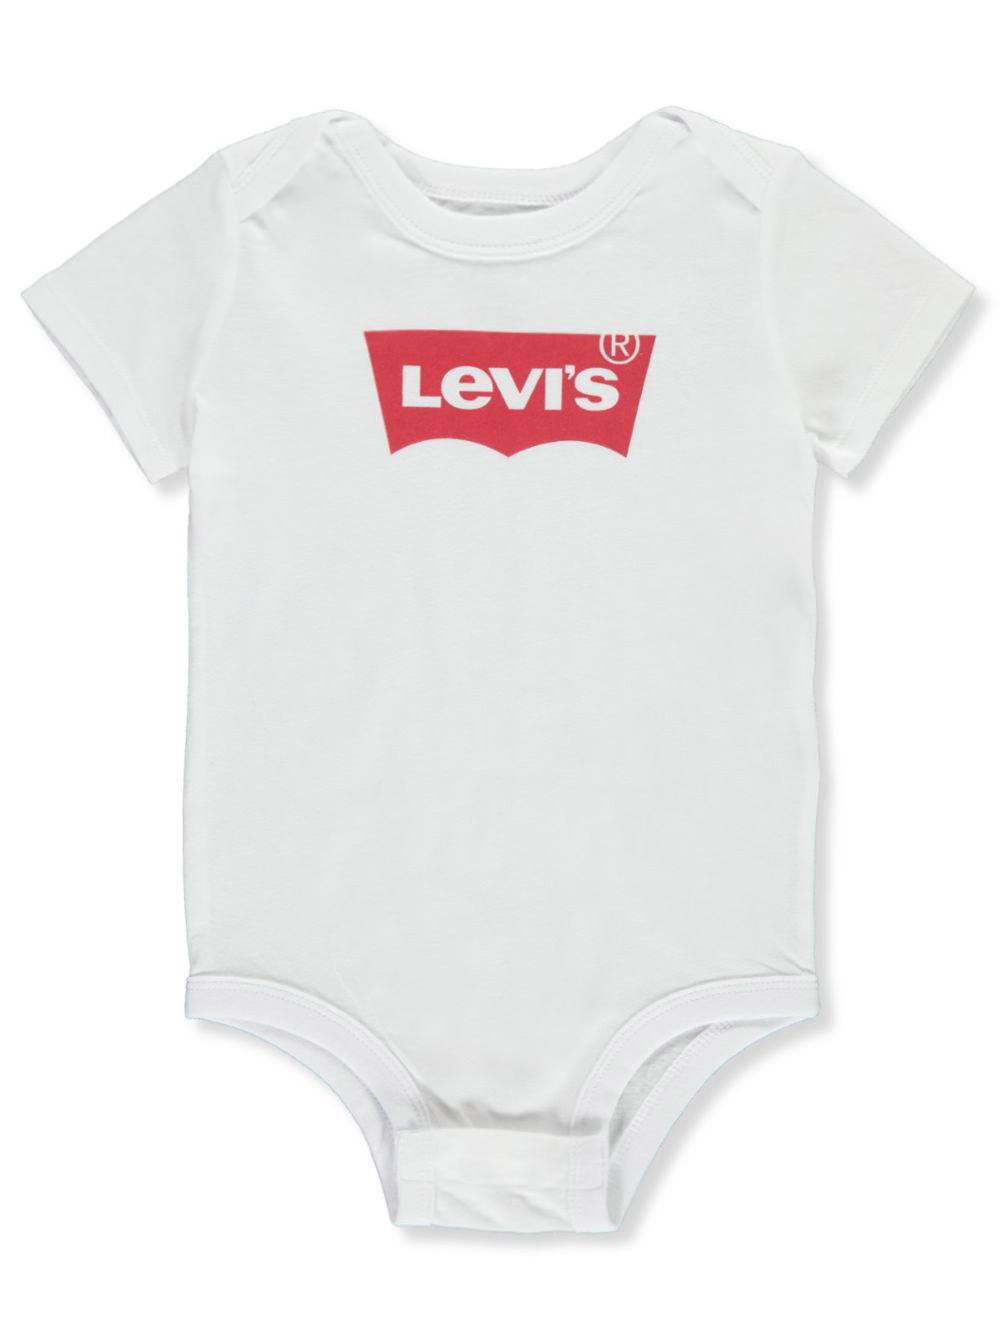 levi's baby bodysuit